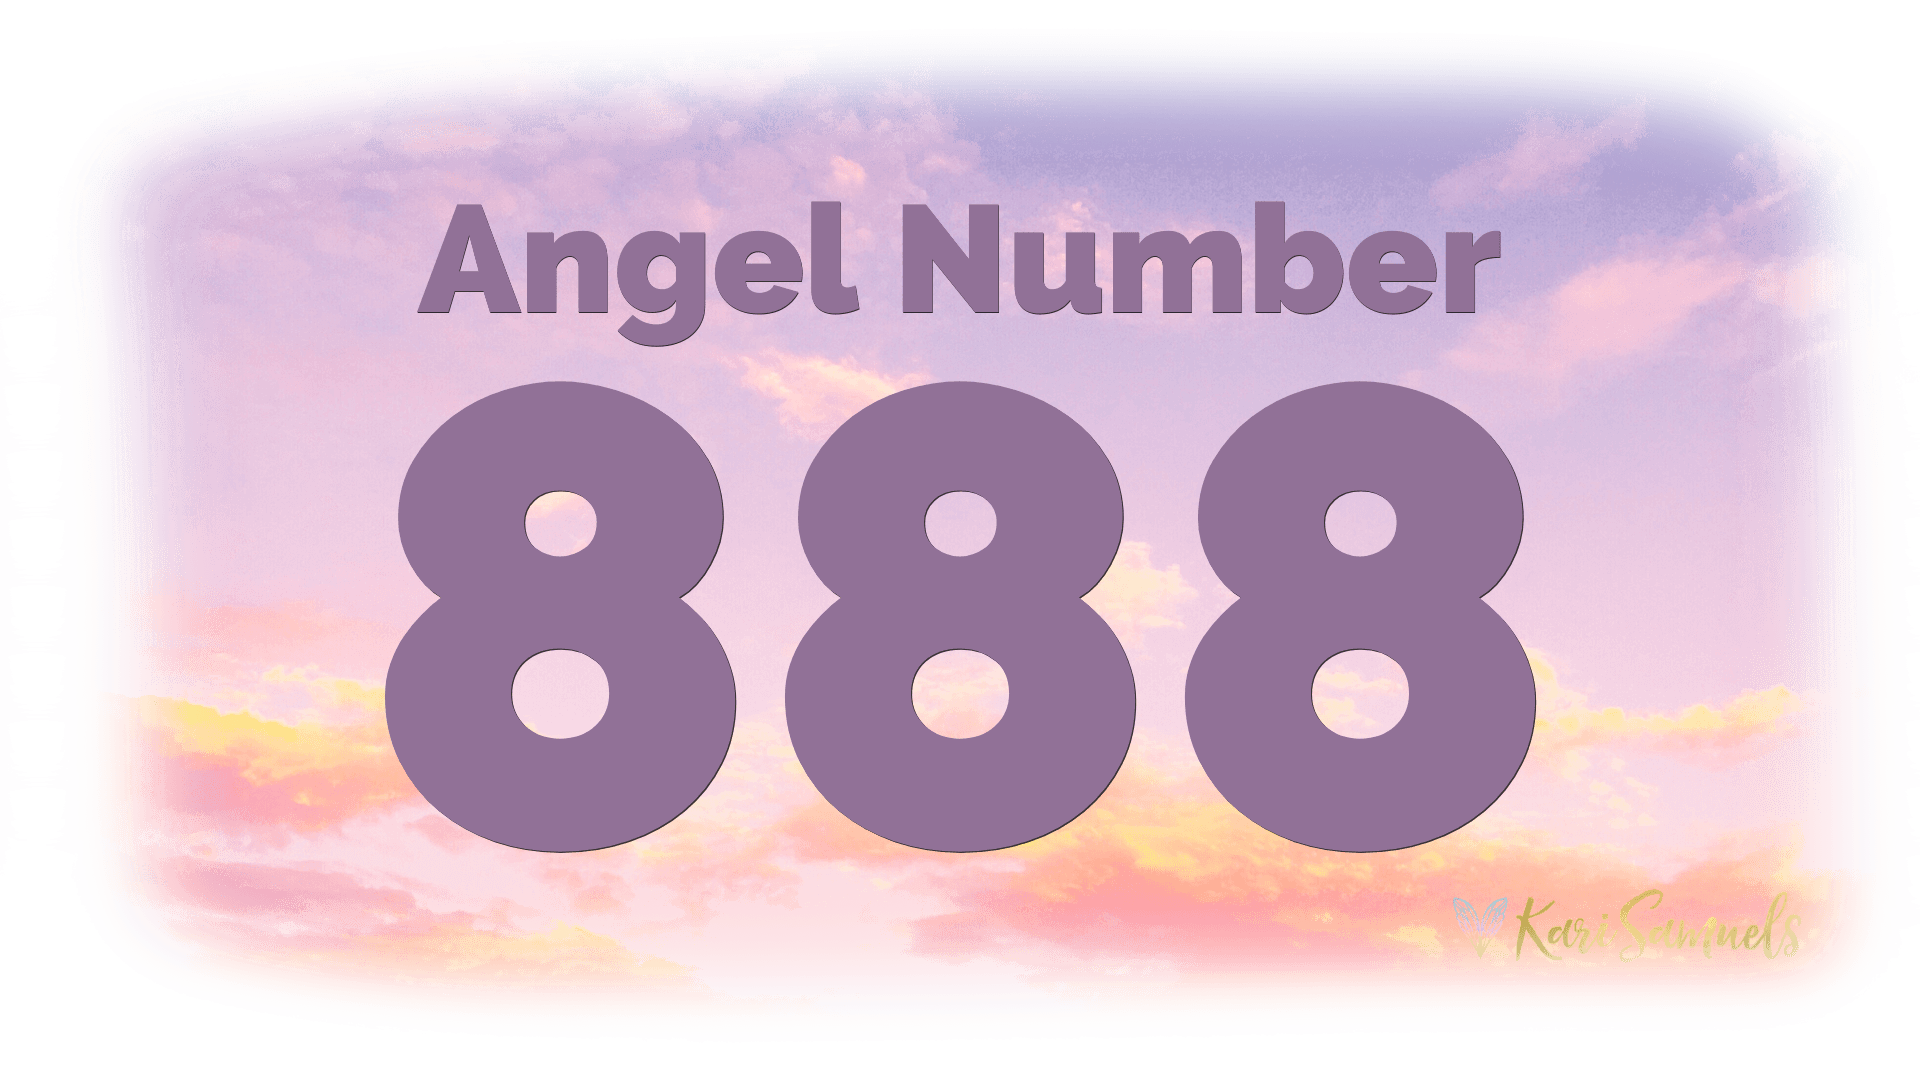 Angel Number 888